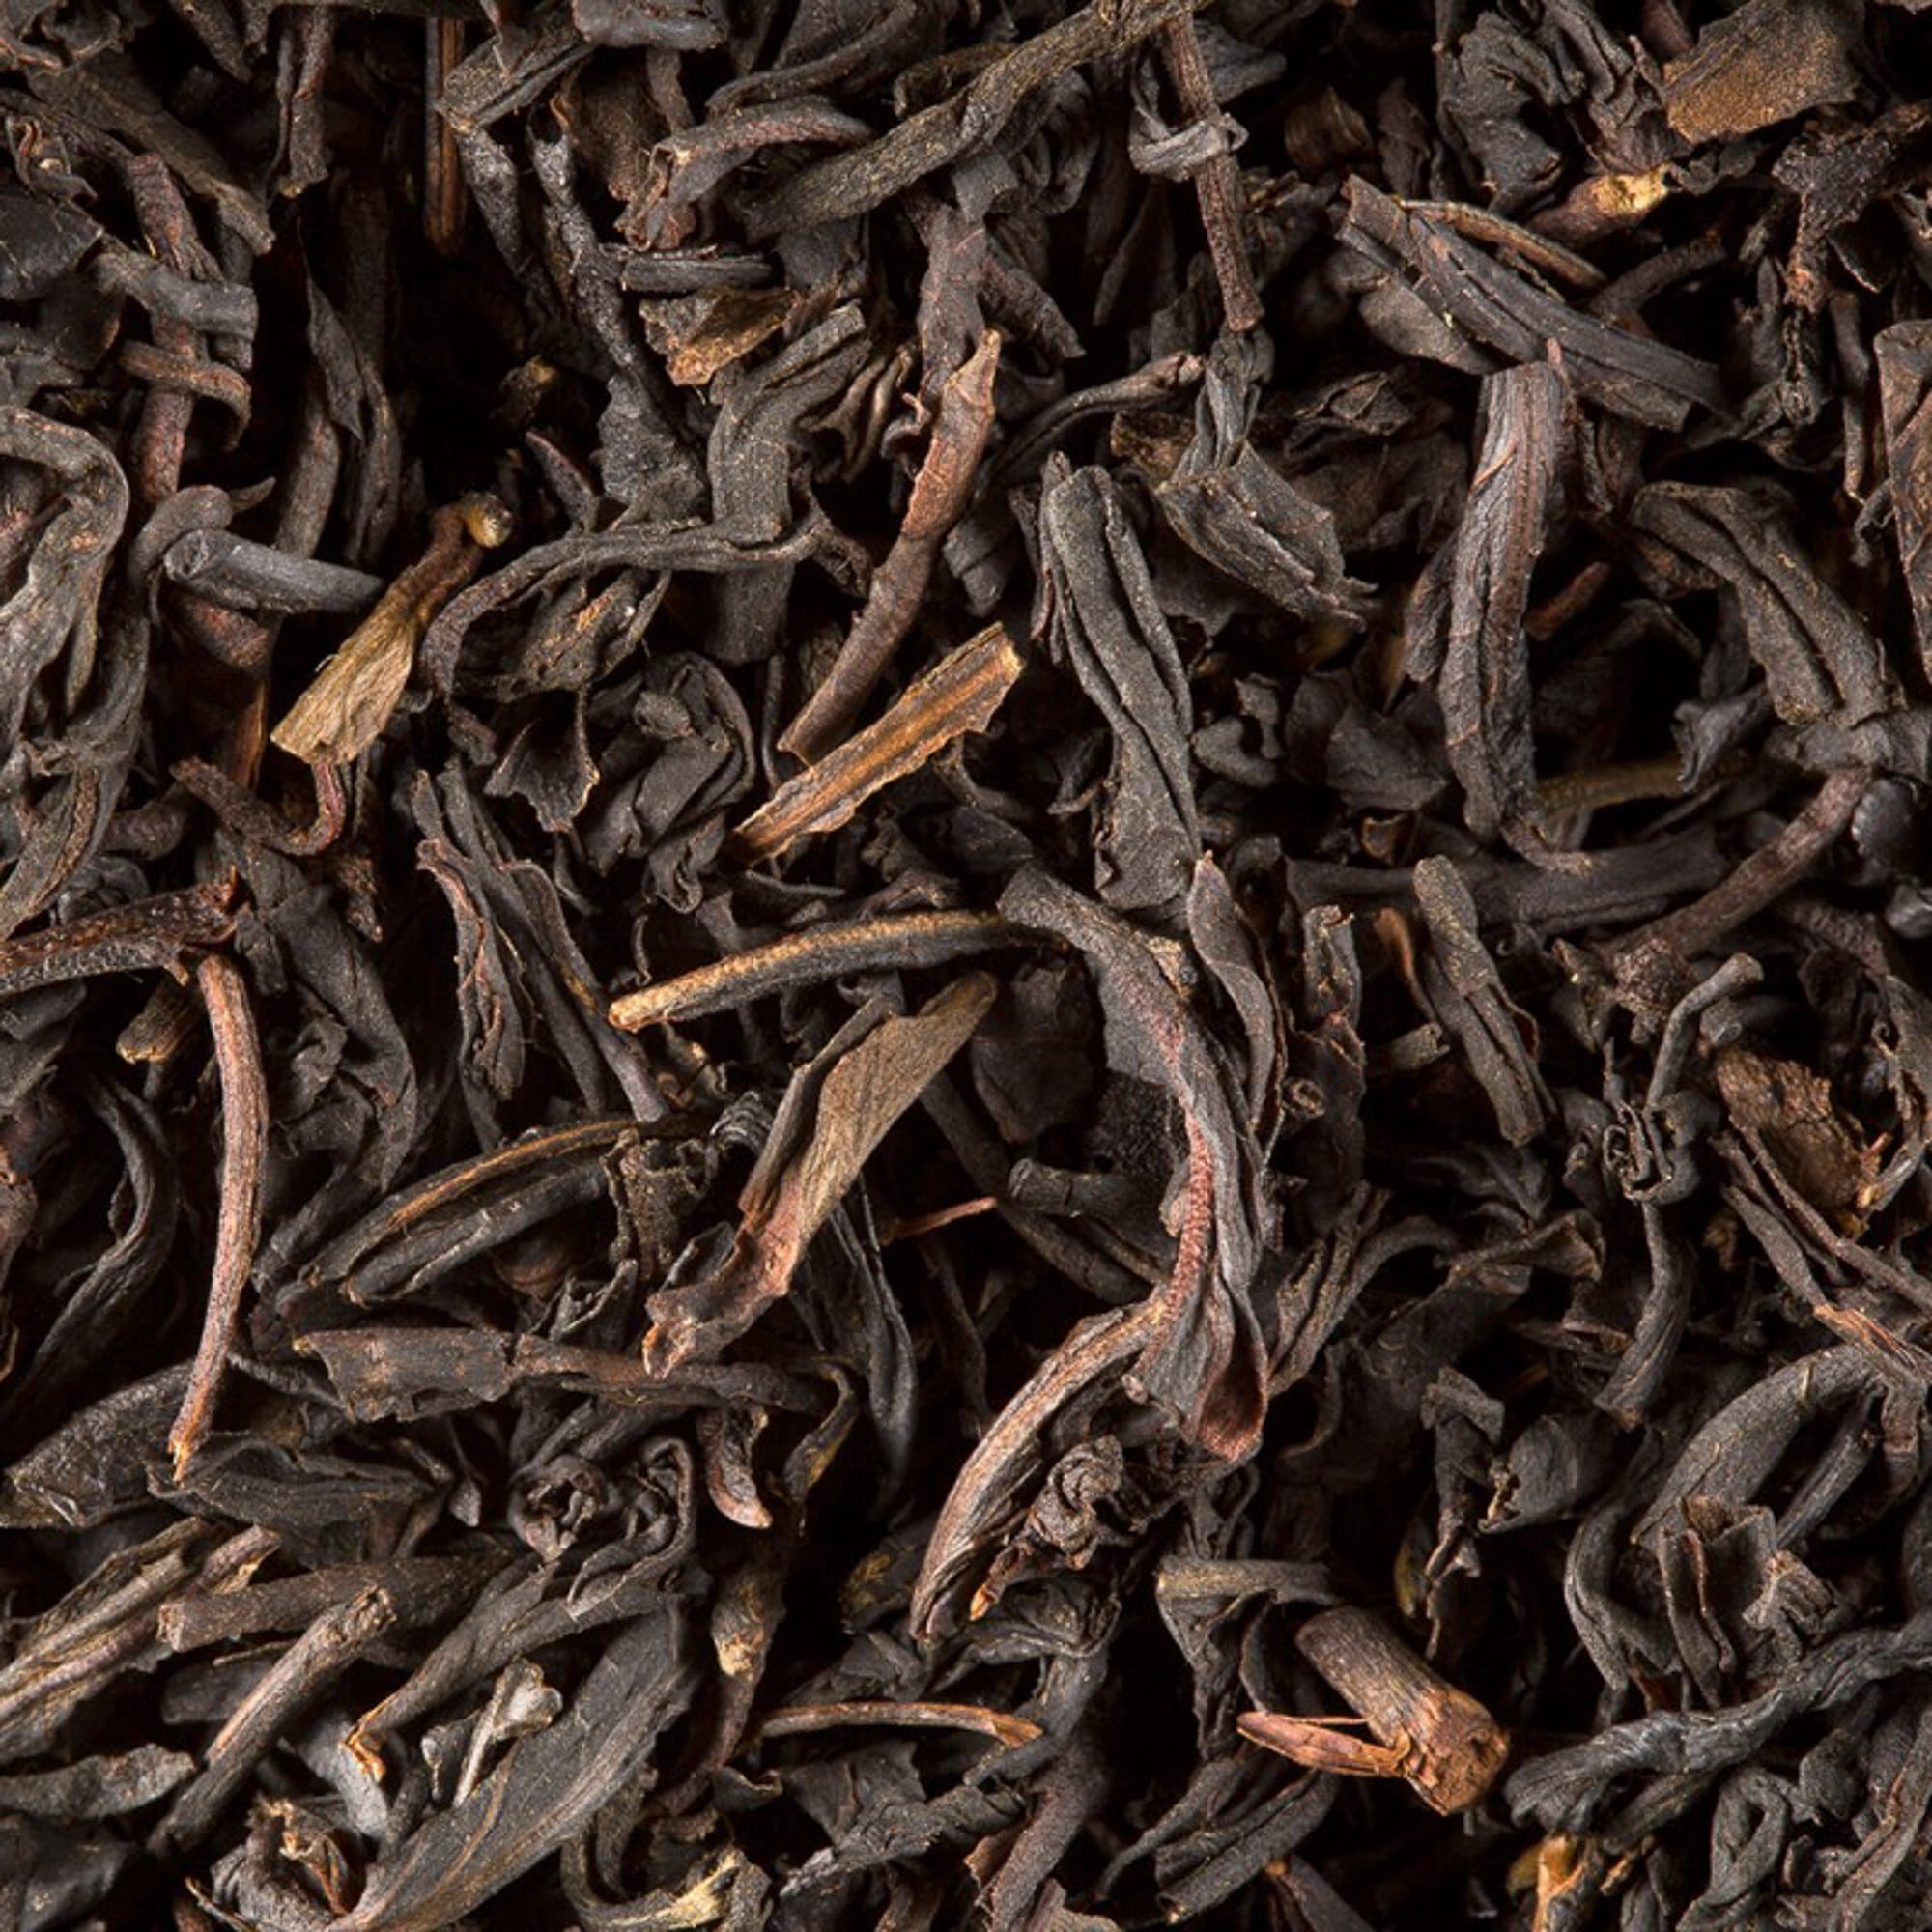 Dammann Biri arbata Biri arbata Home, juoda, Darjeeling G.F.O.P.-8, 100 g